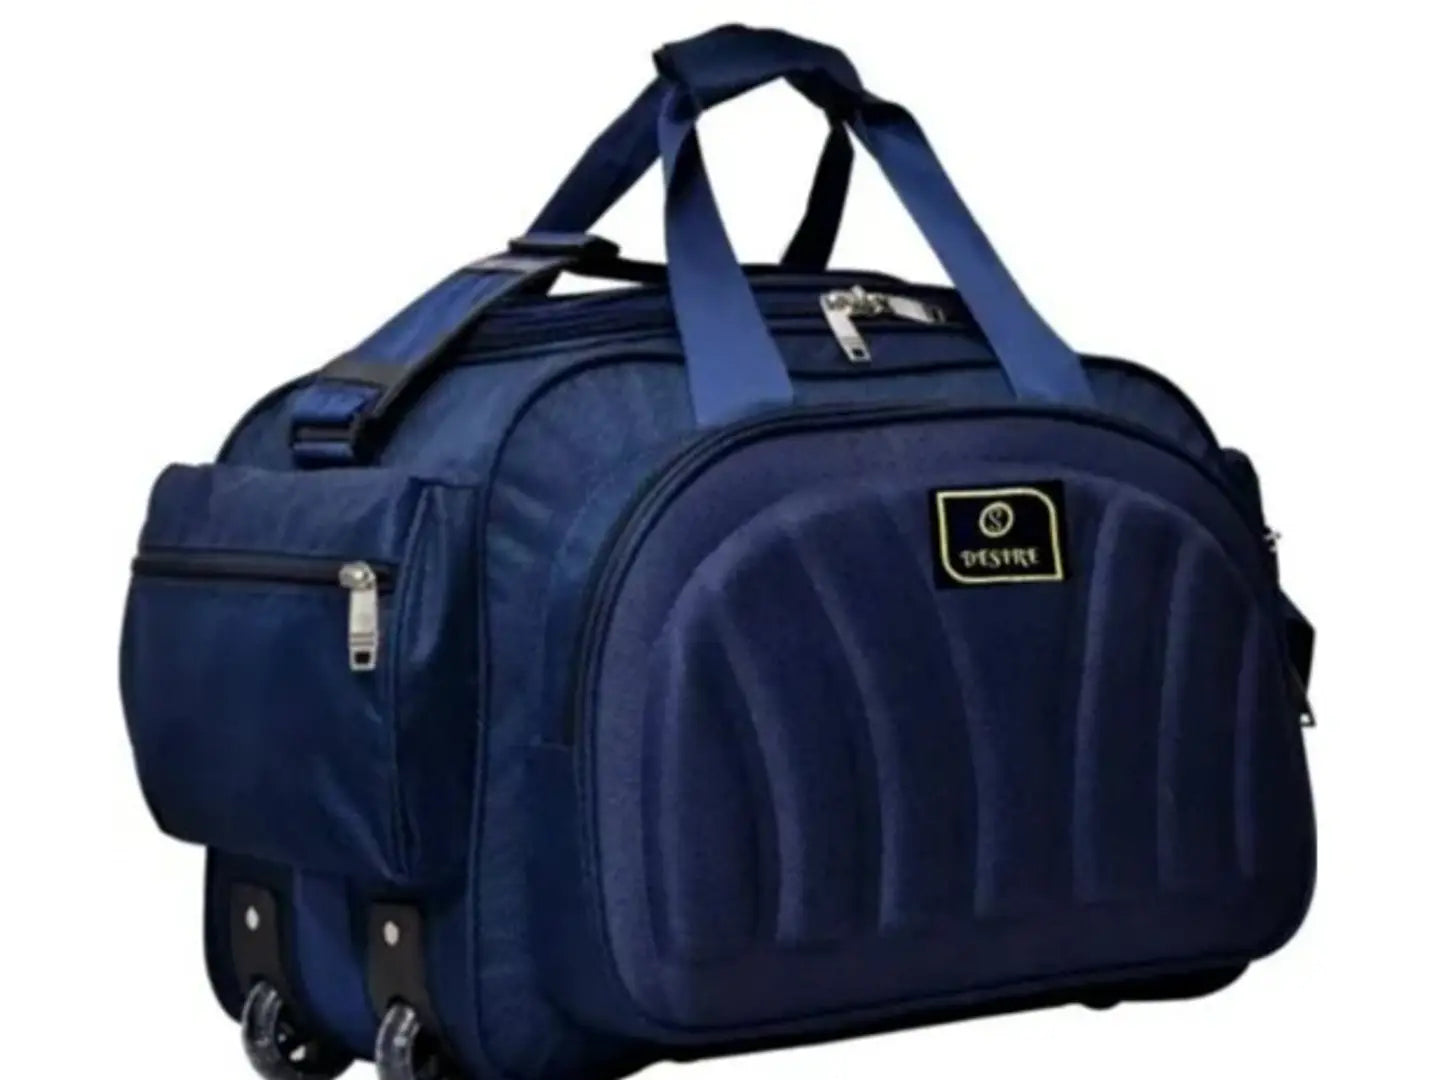 55 L Strolley Duffel Bag - TRAVEL TROLLEY LUGGAGE BAG - Multicolor - Regular Capacity